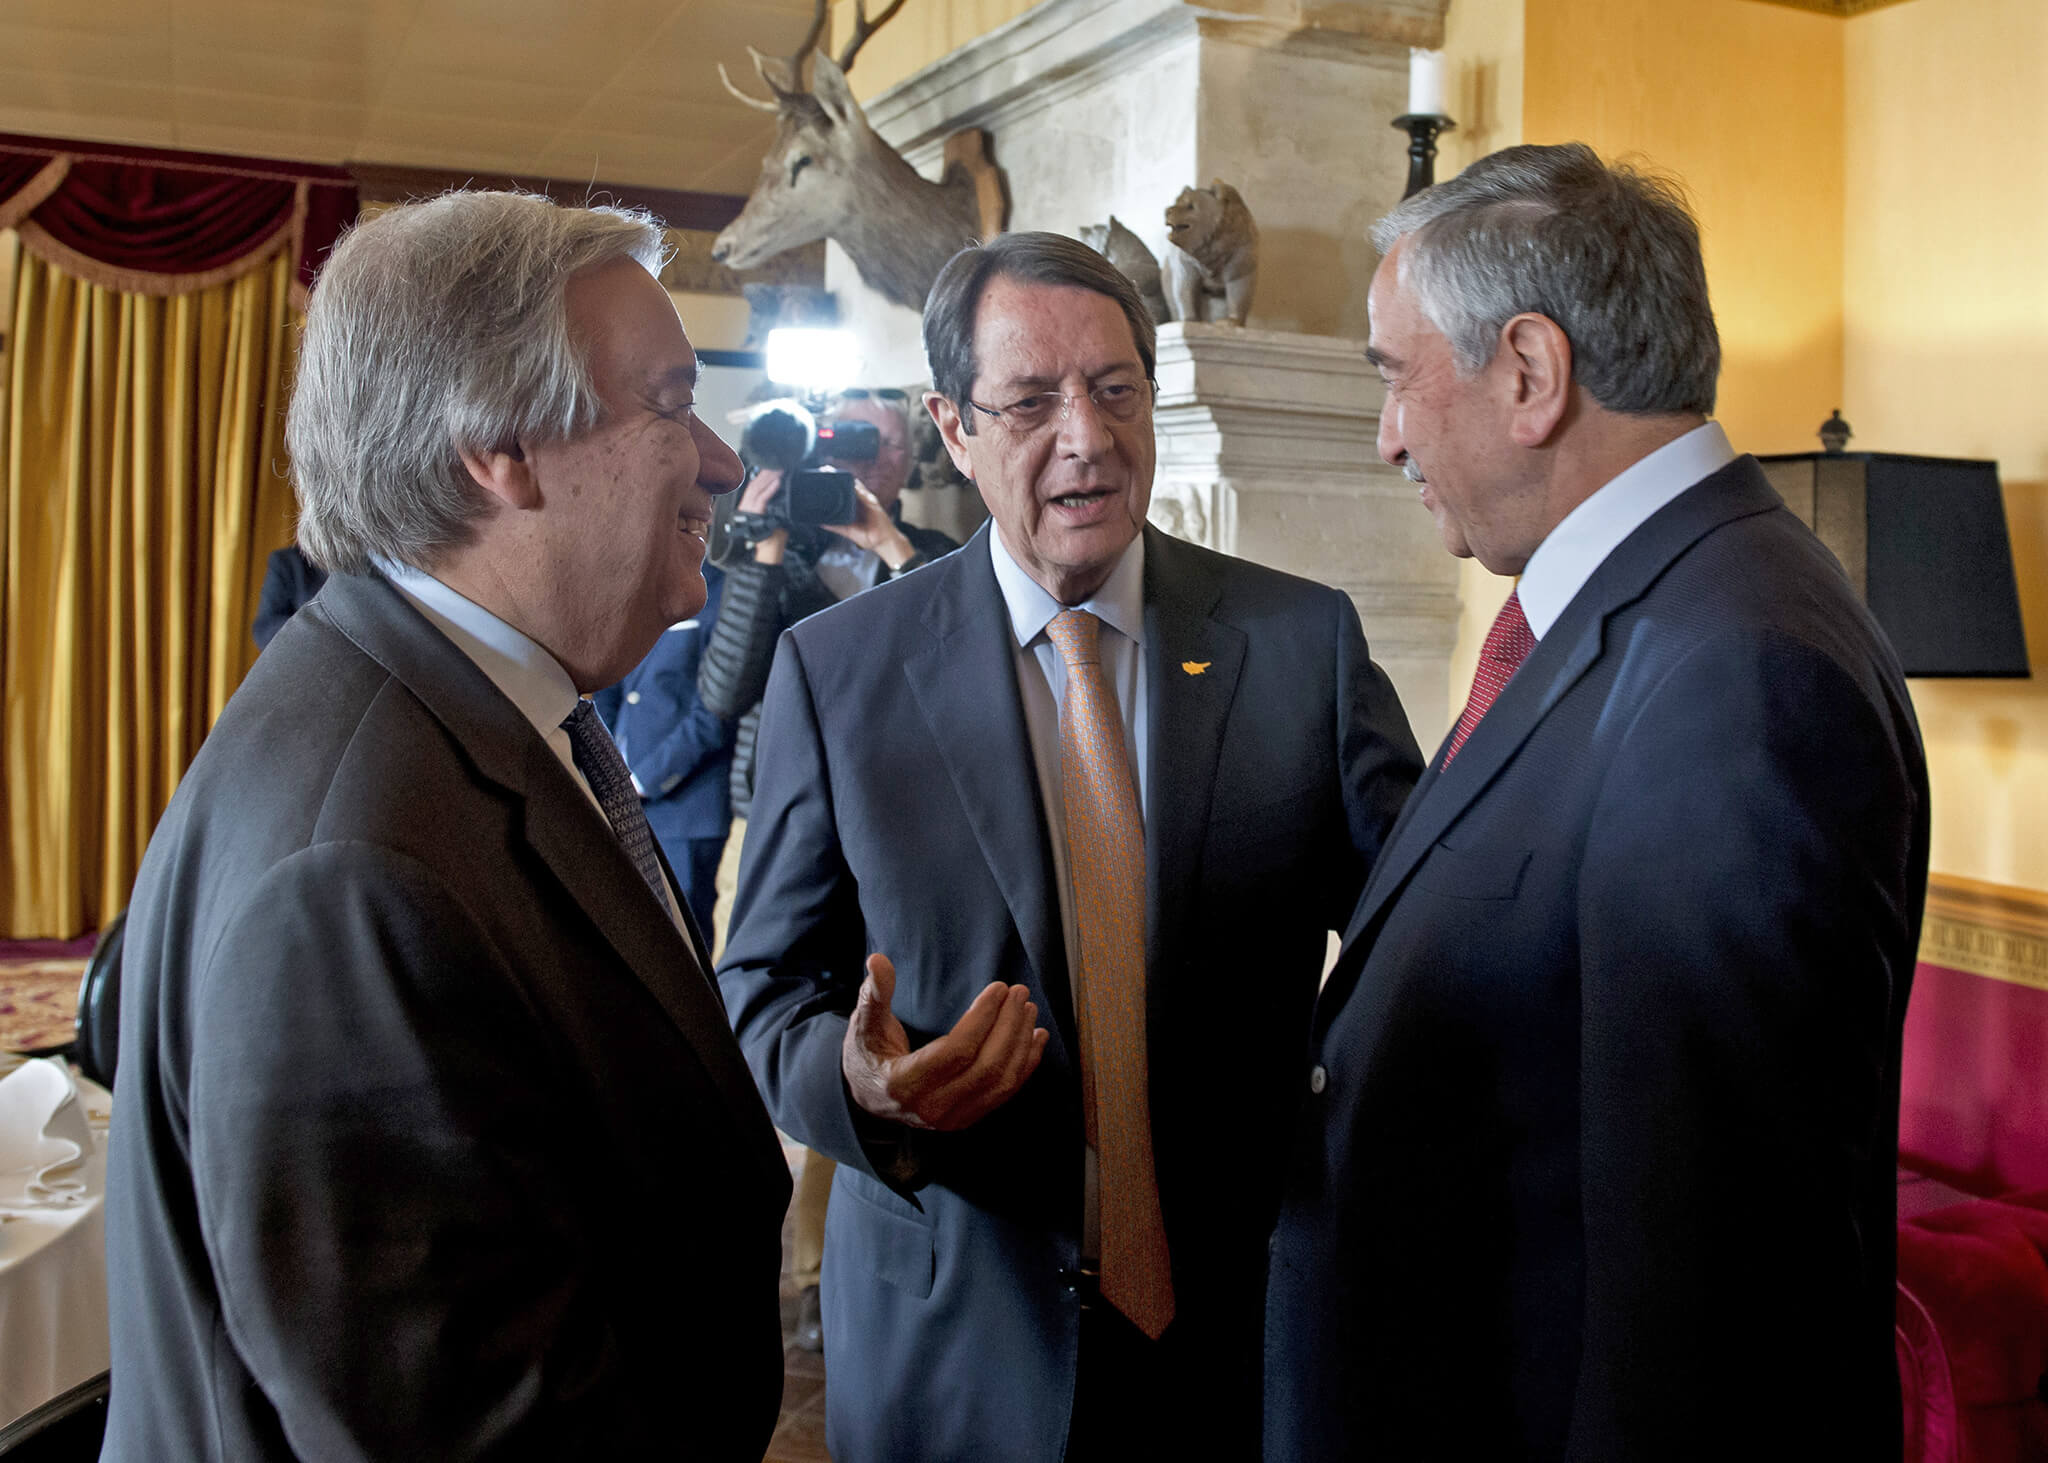 VN-Secretaris-Generaal António Guterres in gesprek met Nicos Anastasiades (president Grieks-Cyprus) en Mustafa Akinci (president Turks-Cyprus). © United Nations Photo/Flickr